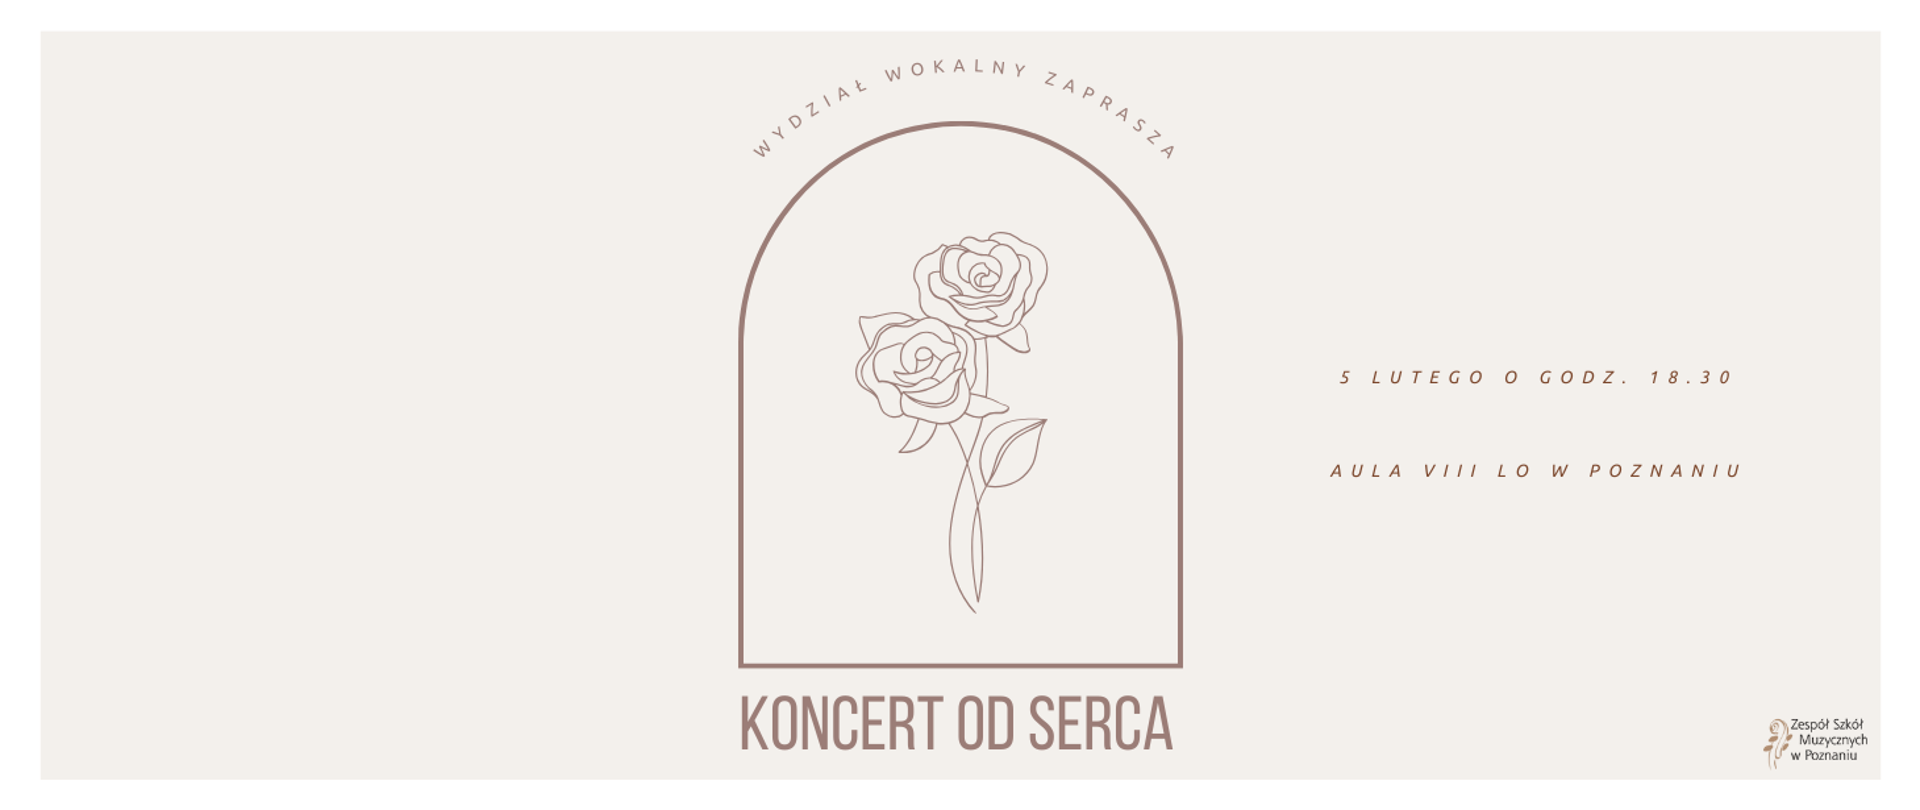 Baner na rózowym tle z grafiką róży, KONCERT OD SERCA, 5 lutego o godz. 18:30, Au;a VIII LO w Poznaniu